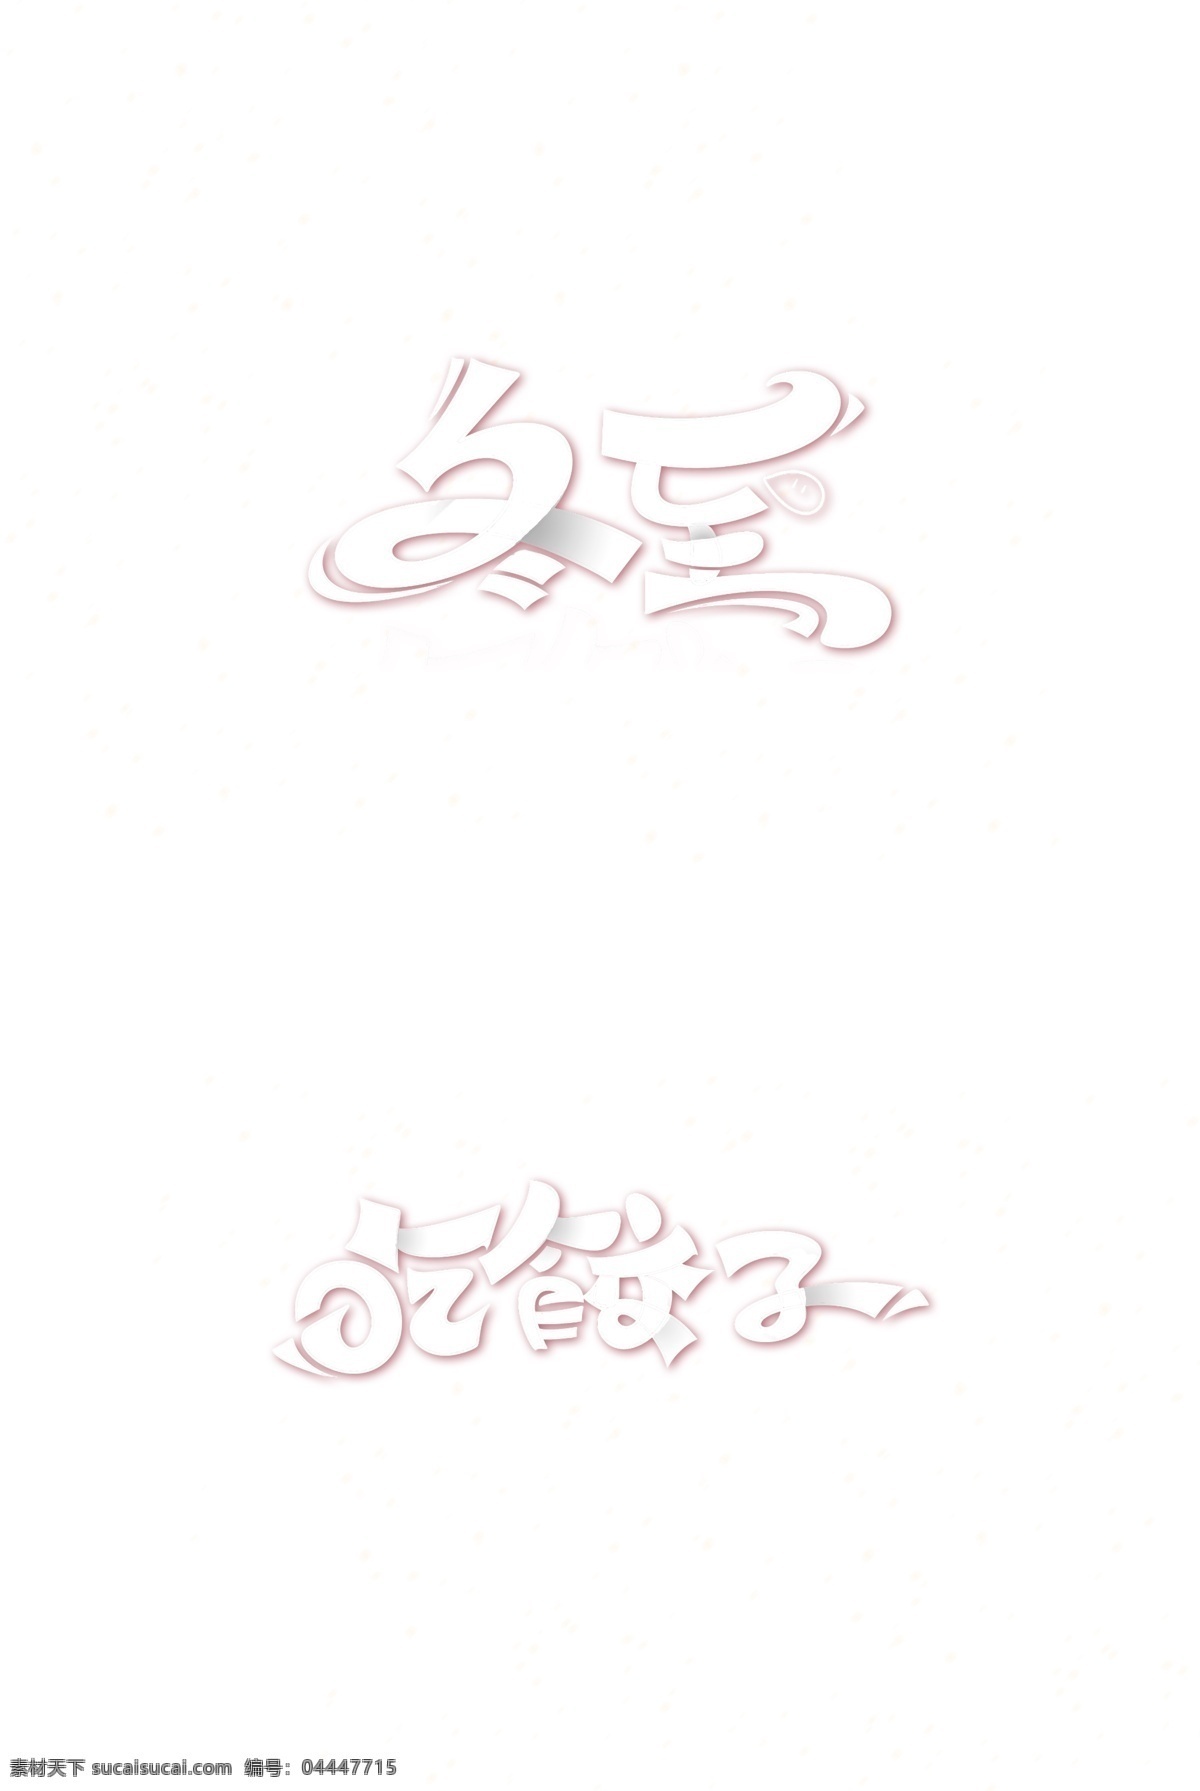 冬至字体 吃 饺子 字体 冬至 吃饺子 可修改 吃饺子字体 字体元素 艺术字